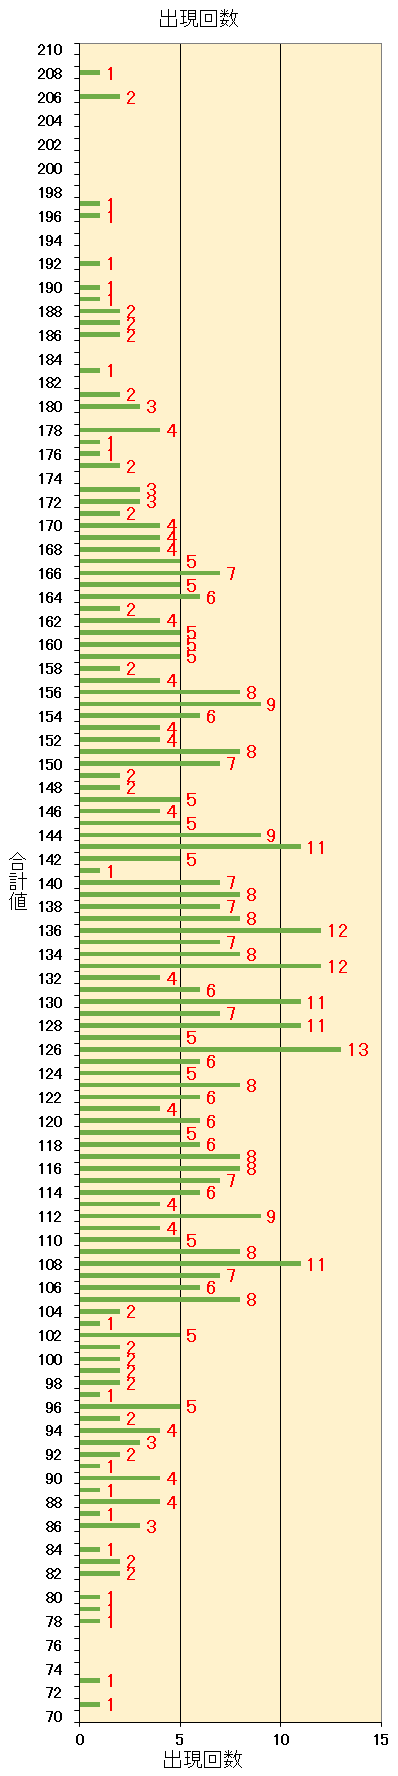 ロト7での第1当選数字から第7当選数字までを合計した合計値毎の出現回数の棒グラフ